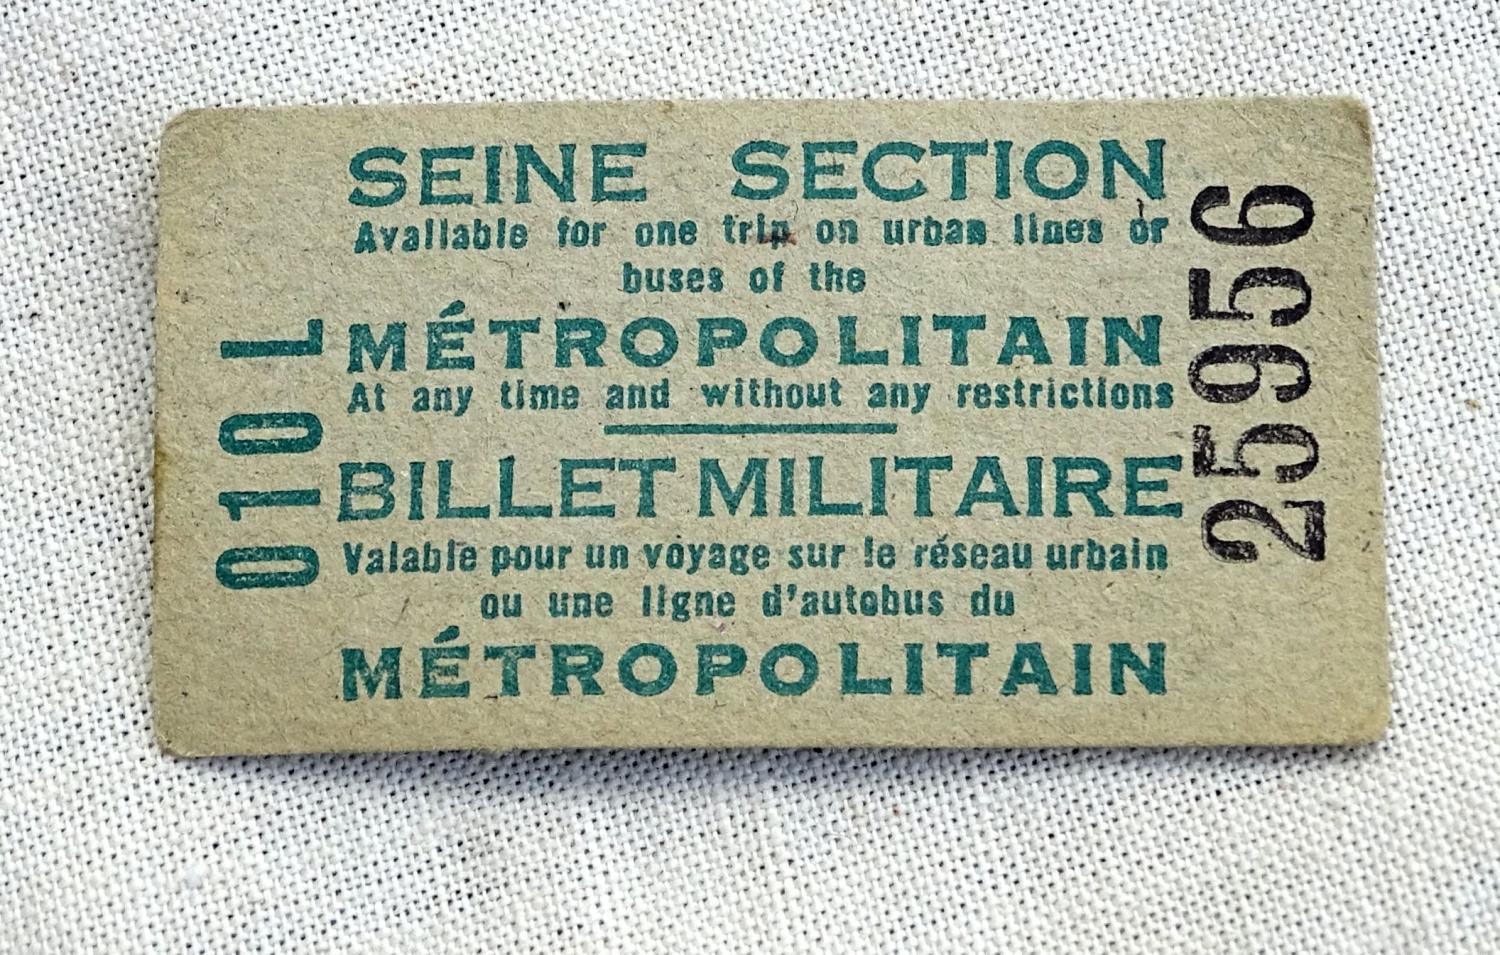 Ticket de métro parisien  Billet militaire en anglais Epoque Libération 1944-45